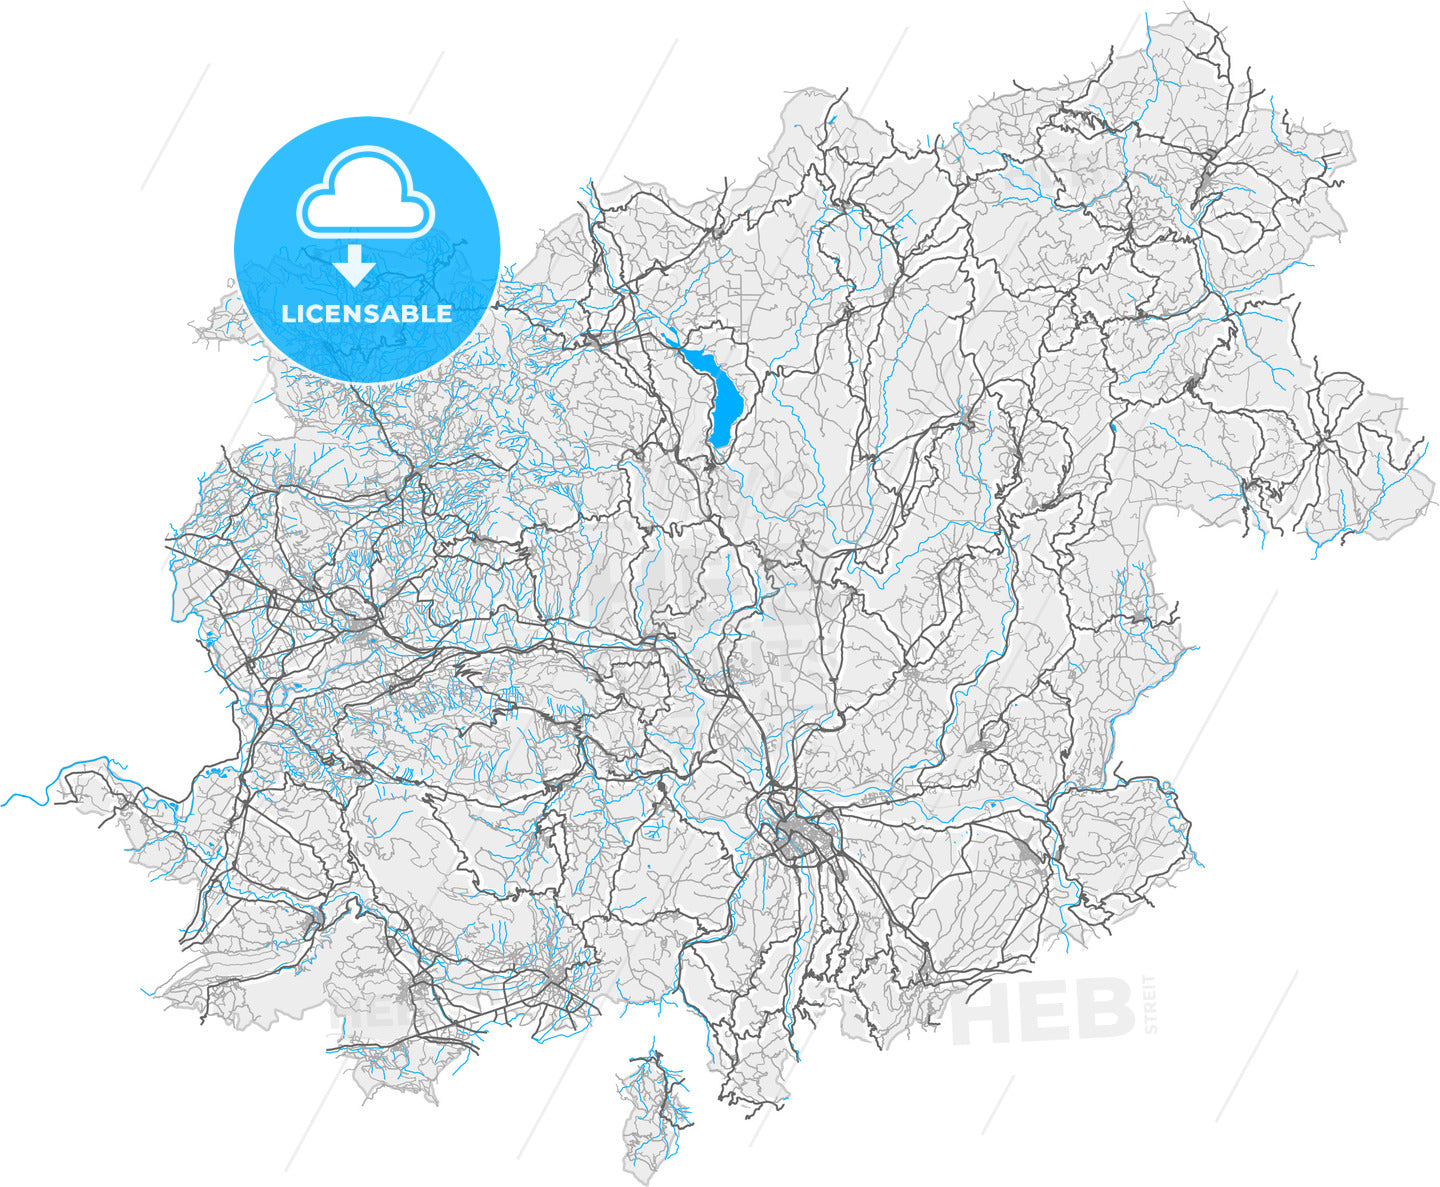 Benevento, Campania, Italy, high quality vector map